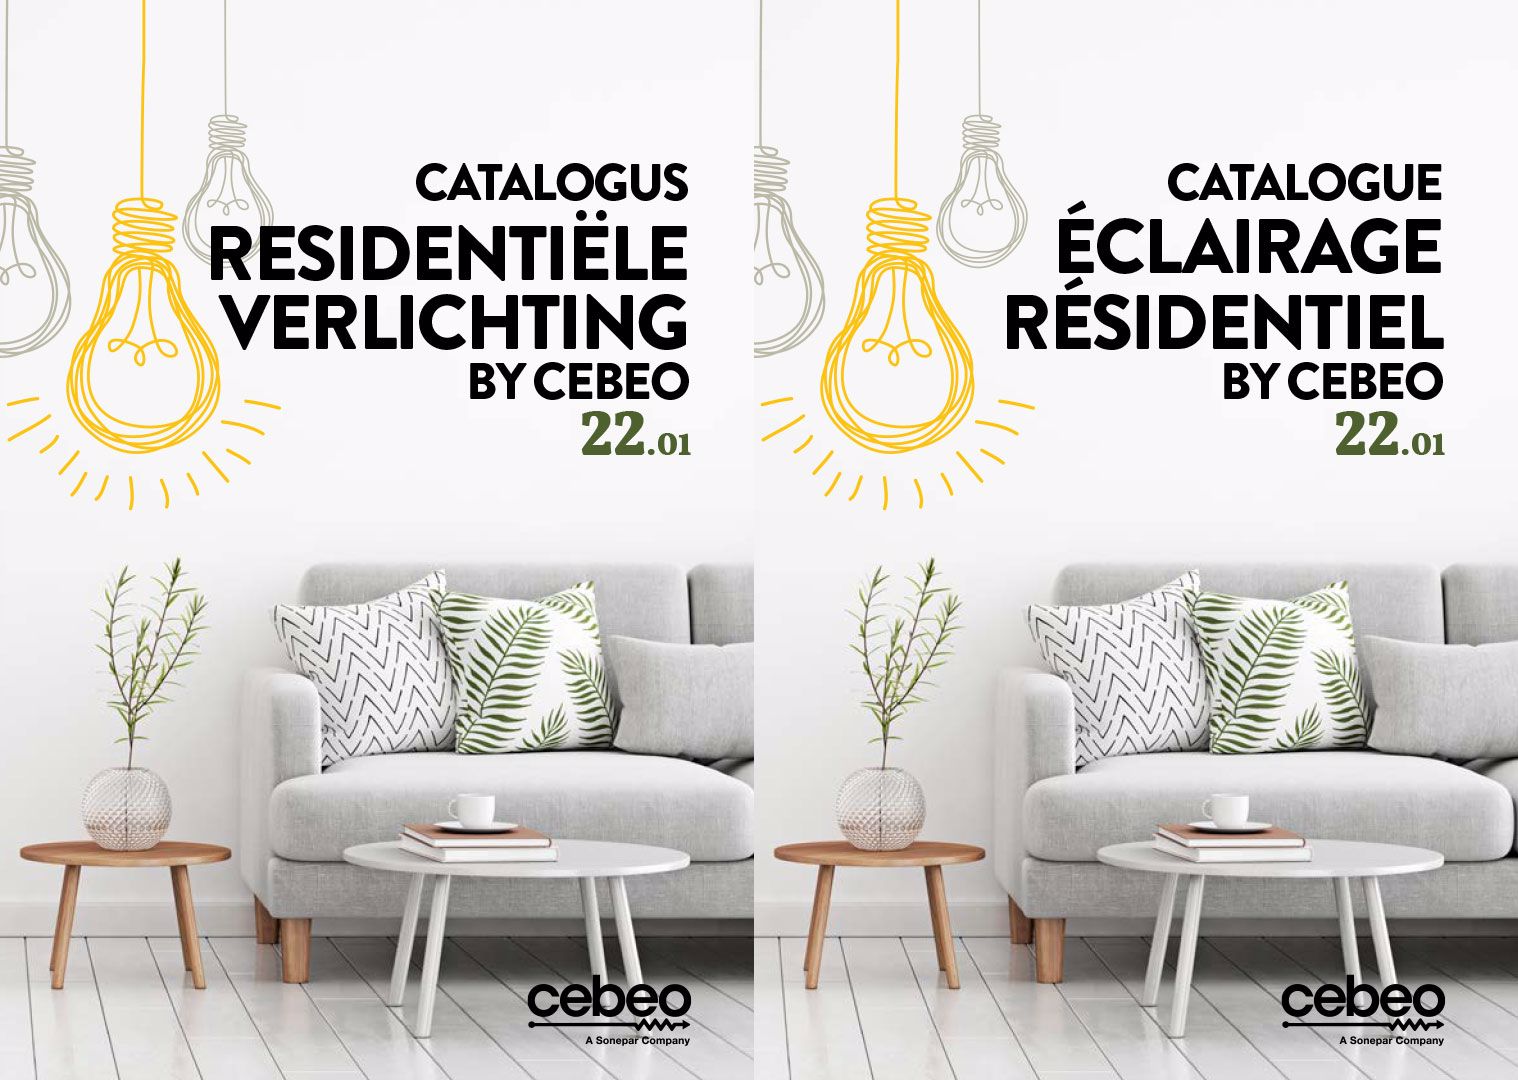 Catalogue éclairage résidentiel (by Cebeo)